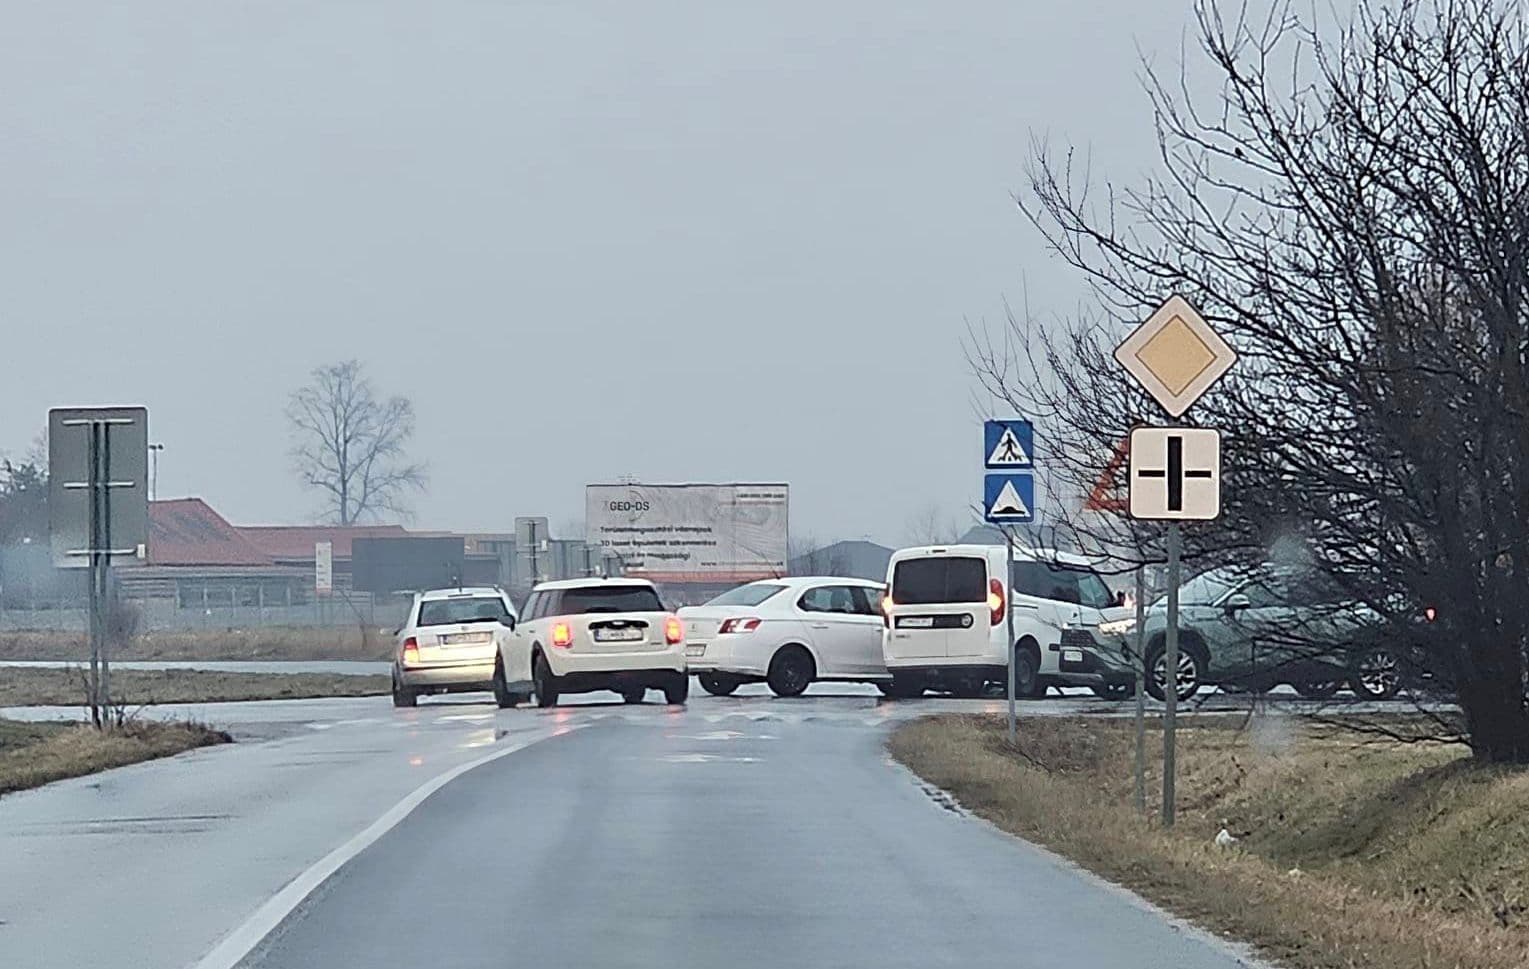 Baleset miatt torlódott a forgalom a dunaszerdahelyi Tesco közelében